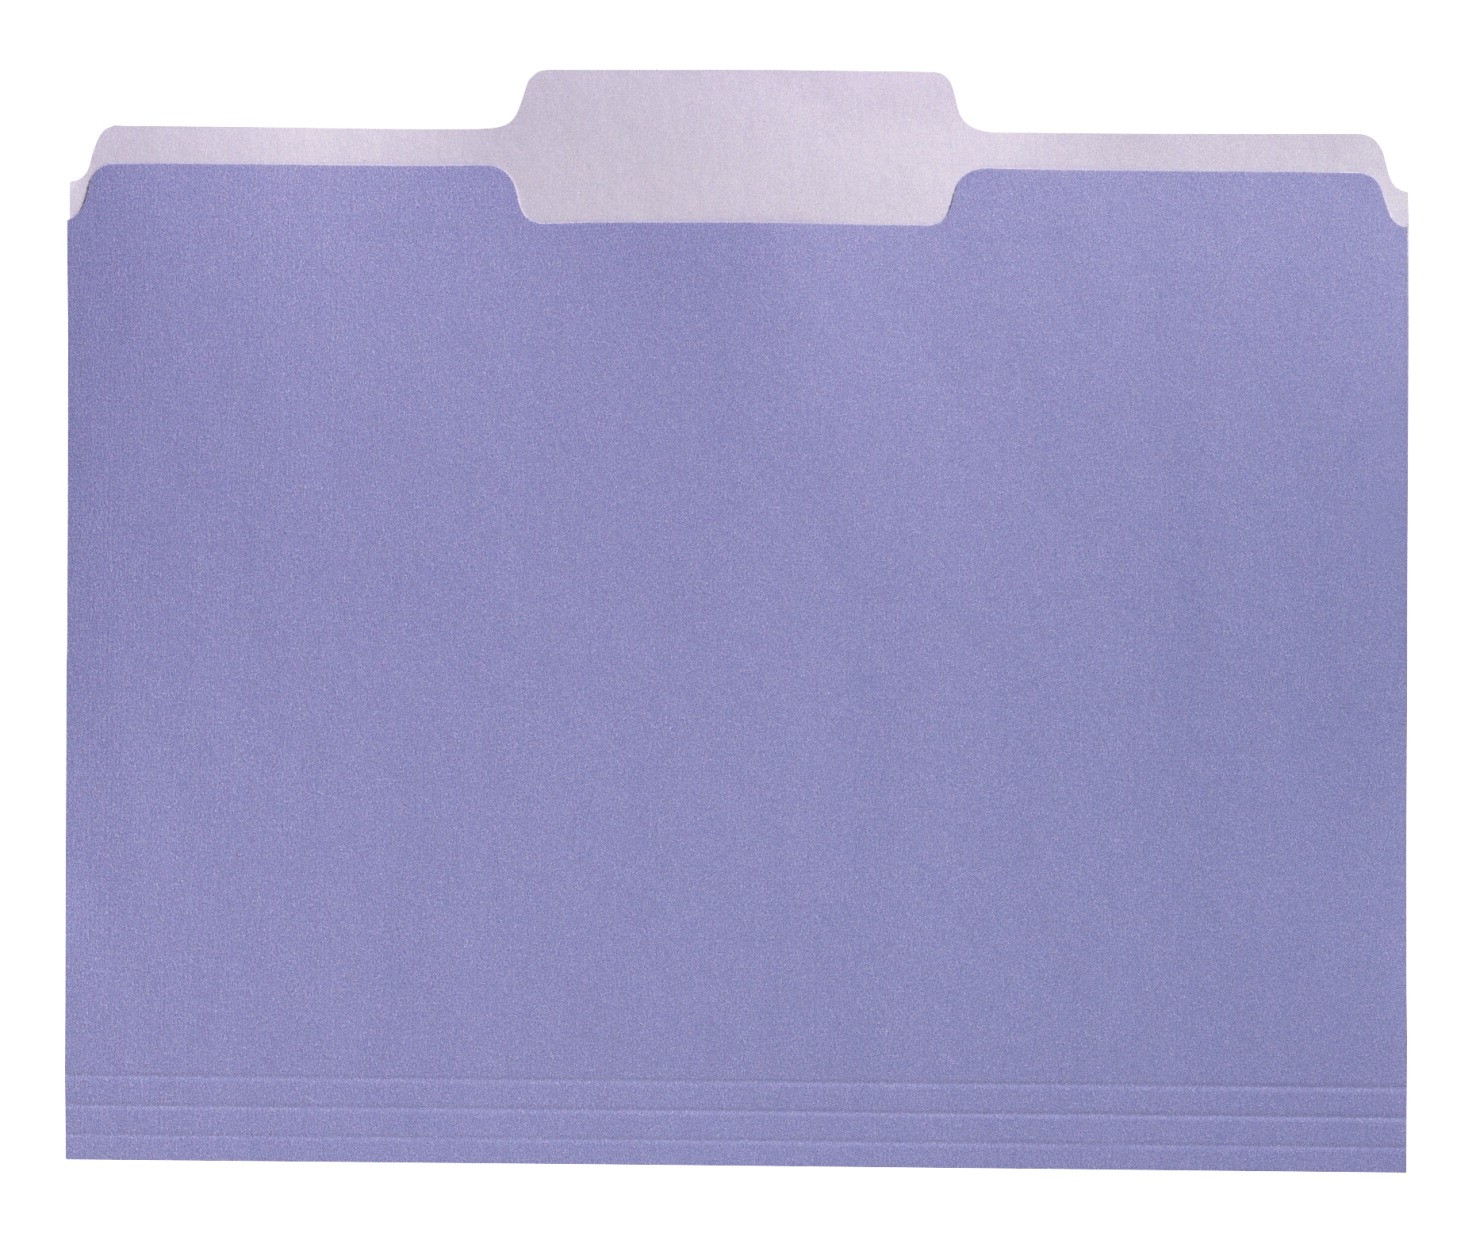 File Folders, Letter Size, 1/3 Cut, Reversible Colored, Lavender - 100/Pkg